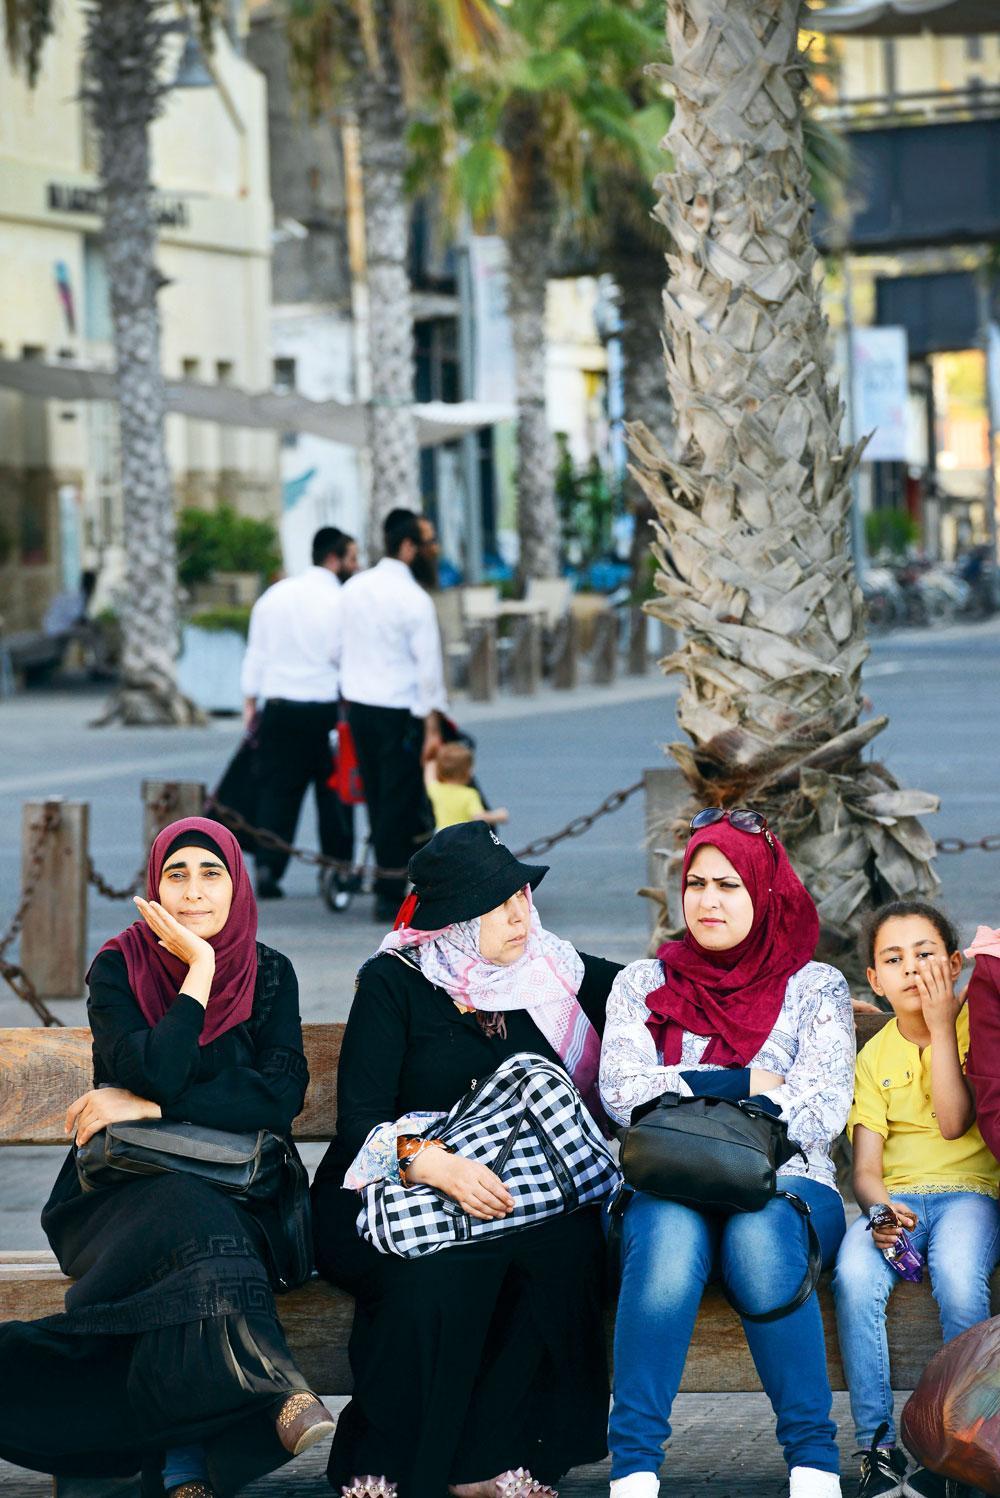 Tel-Aviv-Jaffa est l'une des rares villes où juifs et Palestiniens cohabitent, mais dans des quartiers distincts. Les échanges entre communautés restent limités.